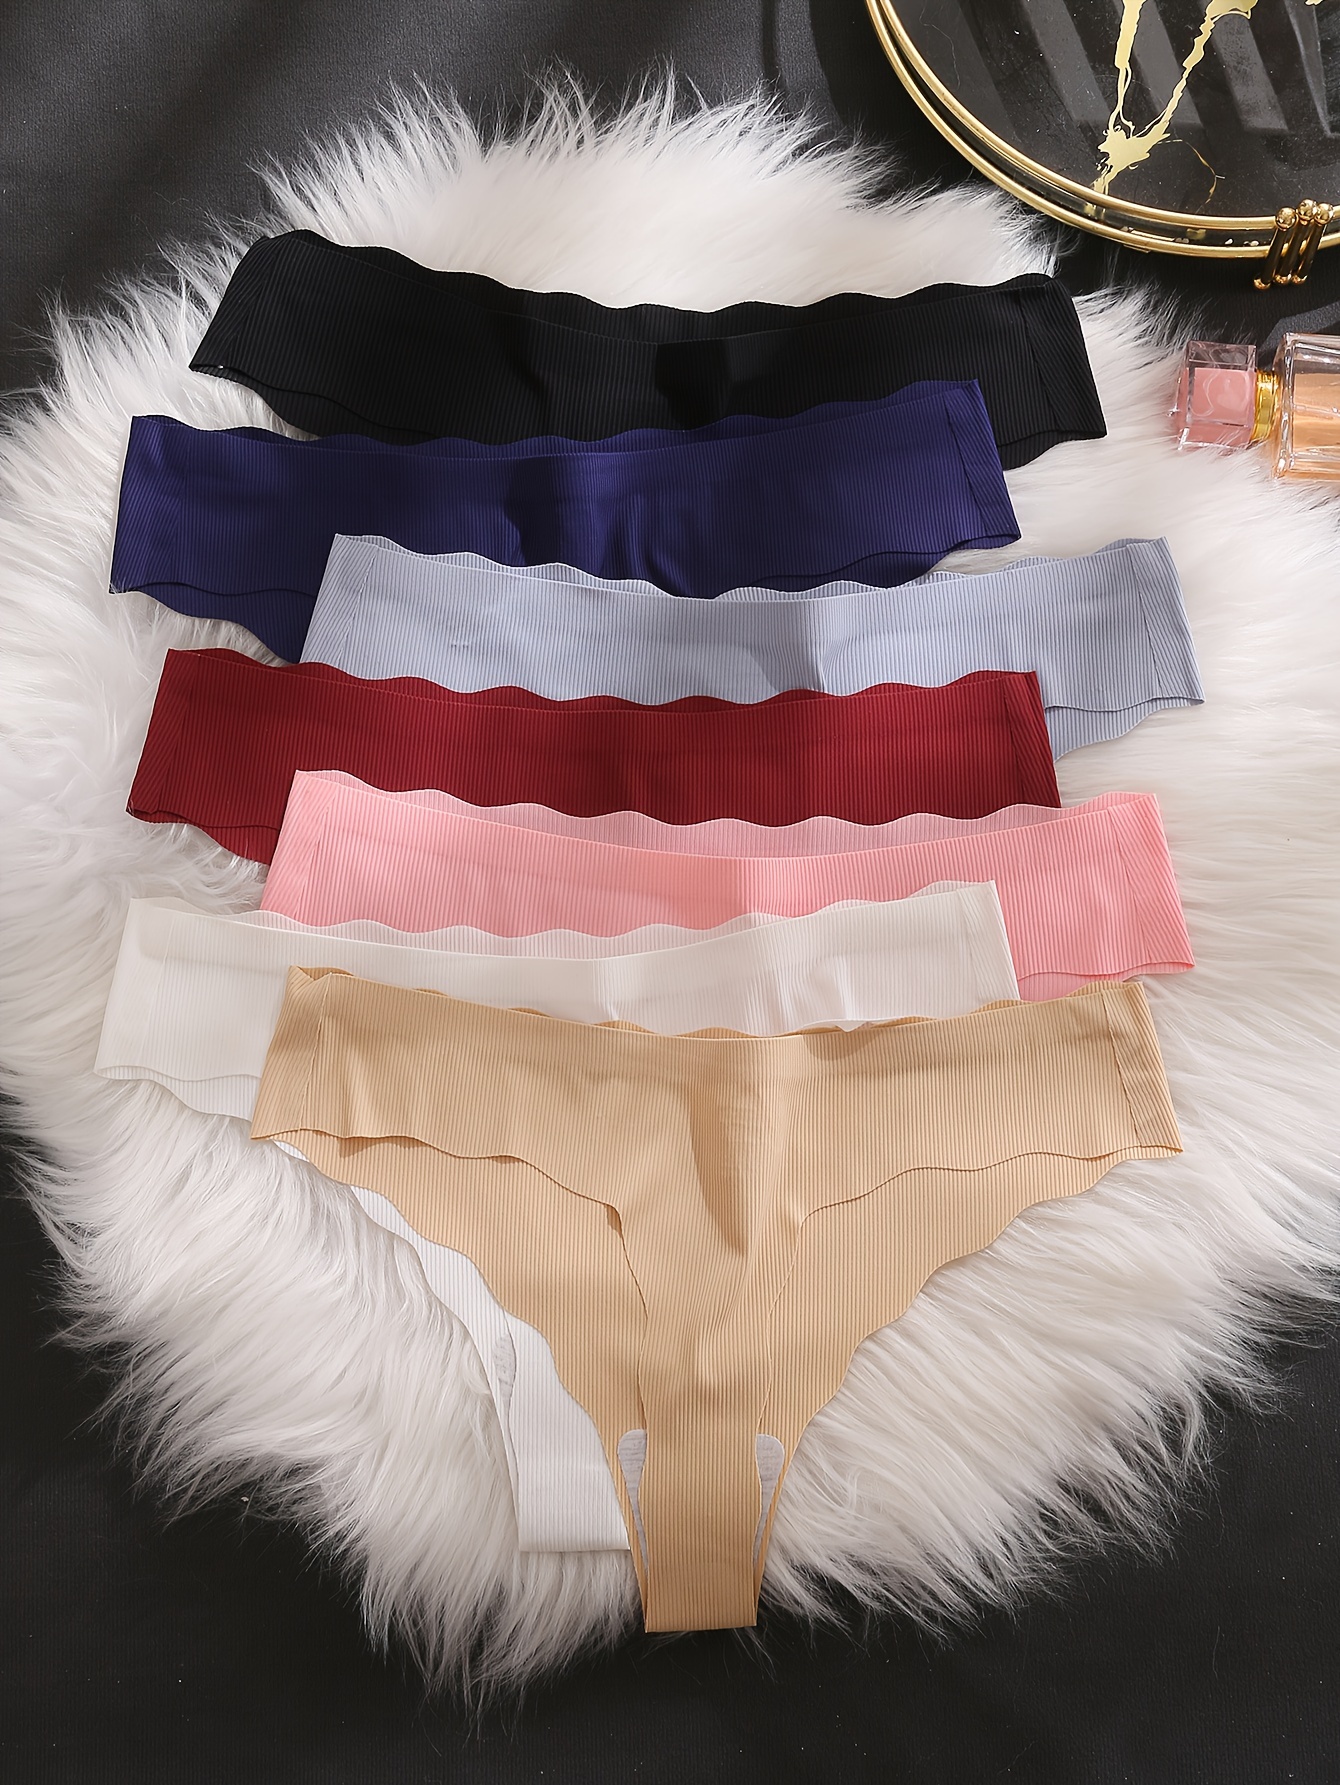 WarmSteps 3Pcs/Set Lace Briefs Woman Underwear Sexy Lingerie 3